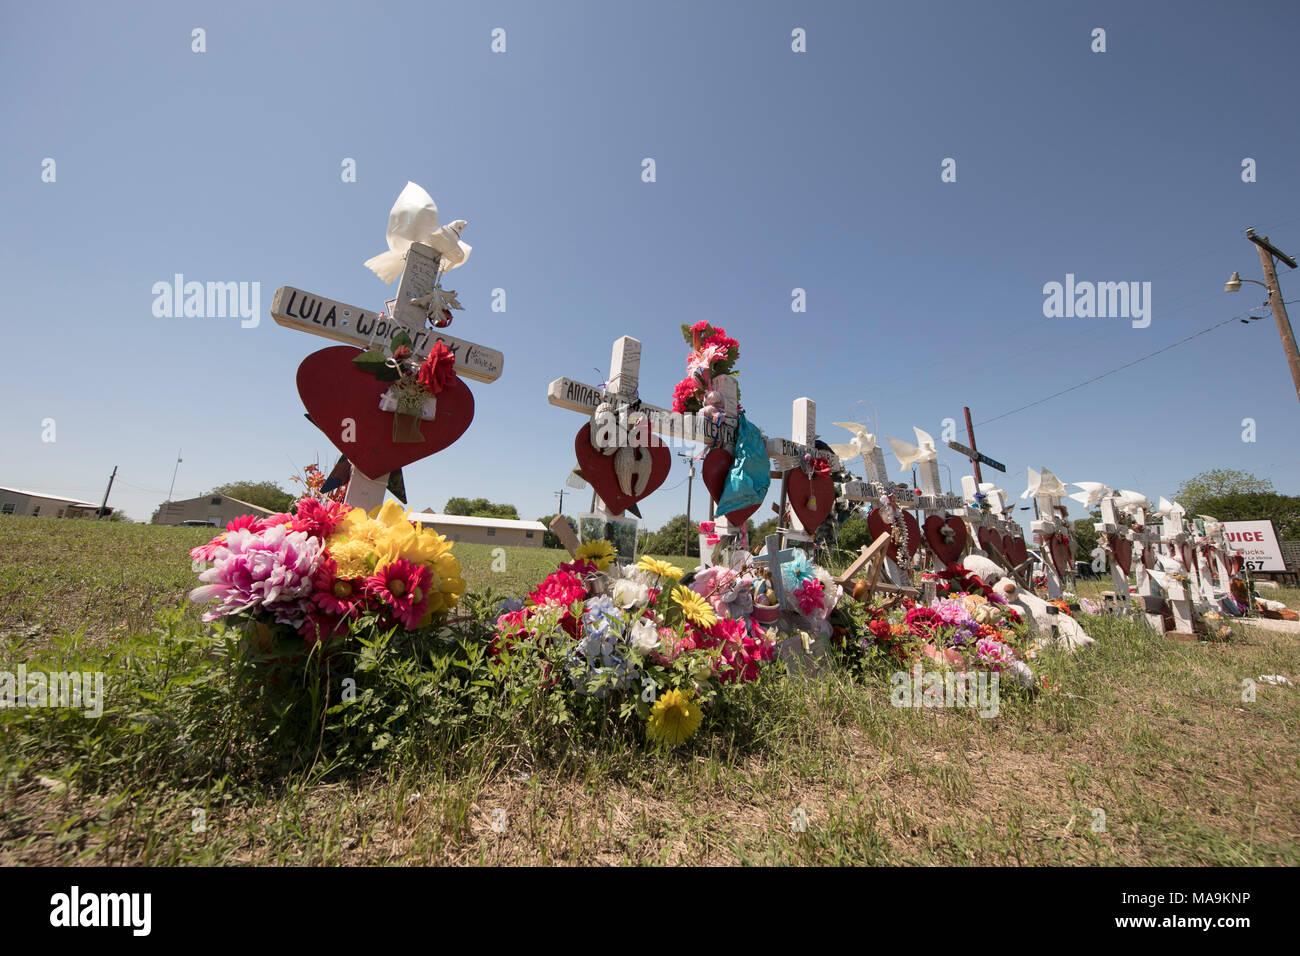 Route de fortune memorial à Sutherland Springs, Texas, aux 26 victimes tuées par un homme armé dans la première église baptiste de la ville en novembre 2017. Banque D'Images